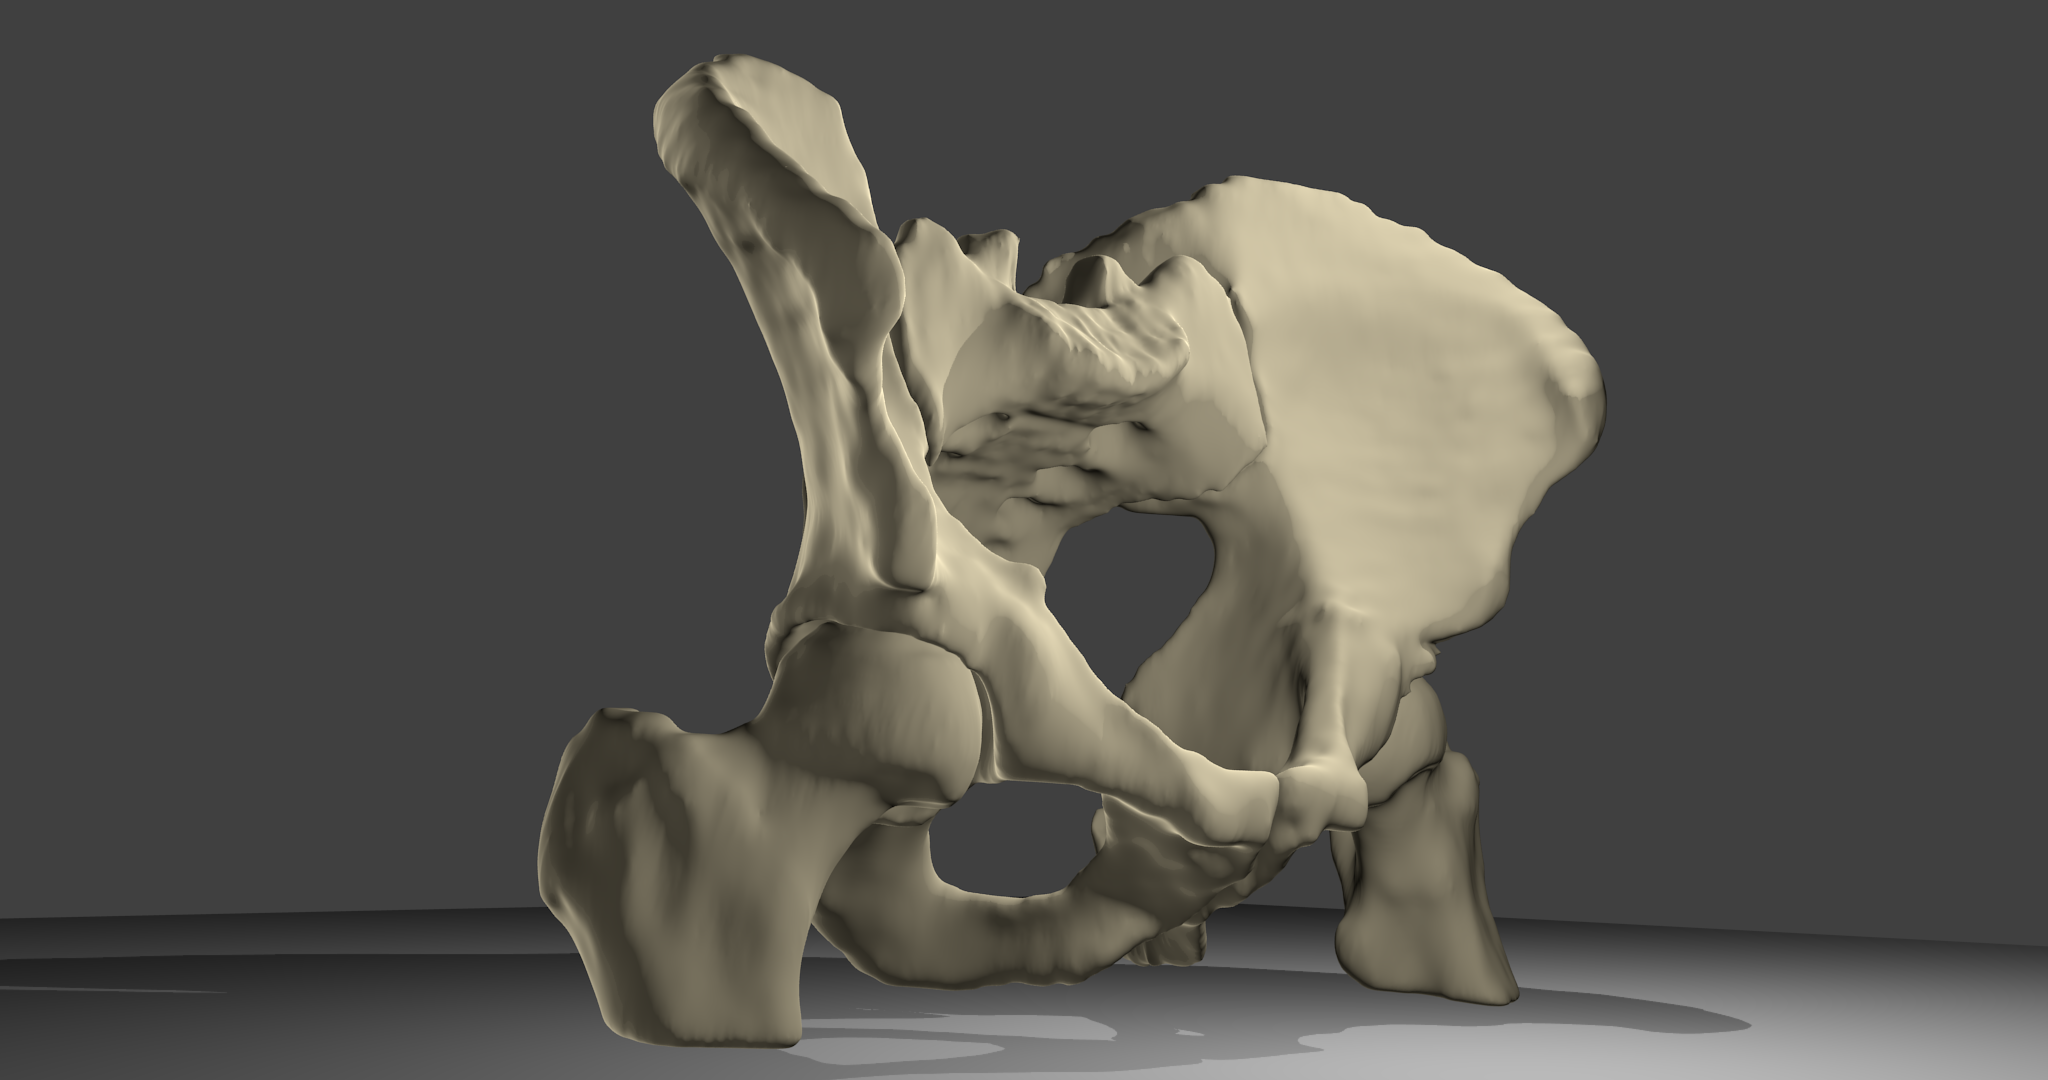 3D-Modell Beckenknochen:Beckenknochen mit Oberschenkelknochen und Kreuzbein, männlich. Ansicht von vorne.